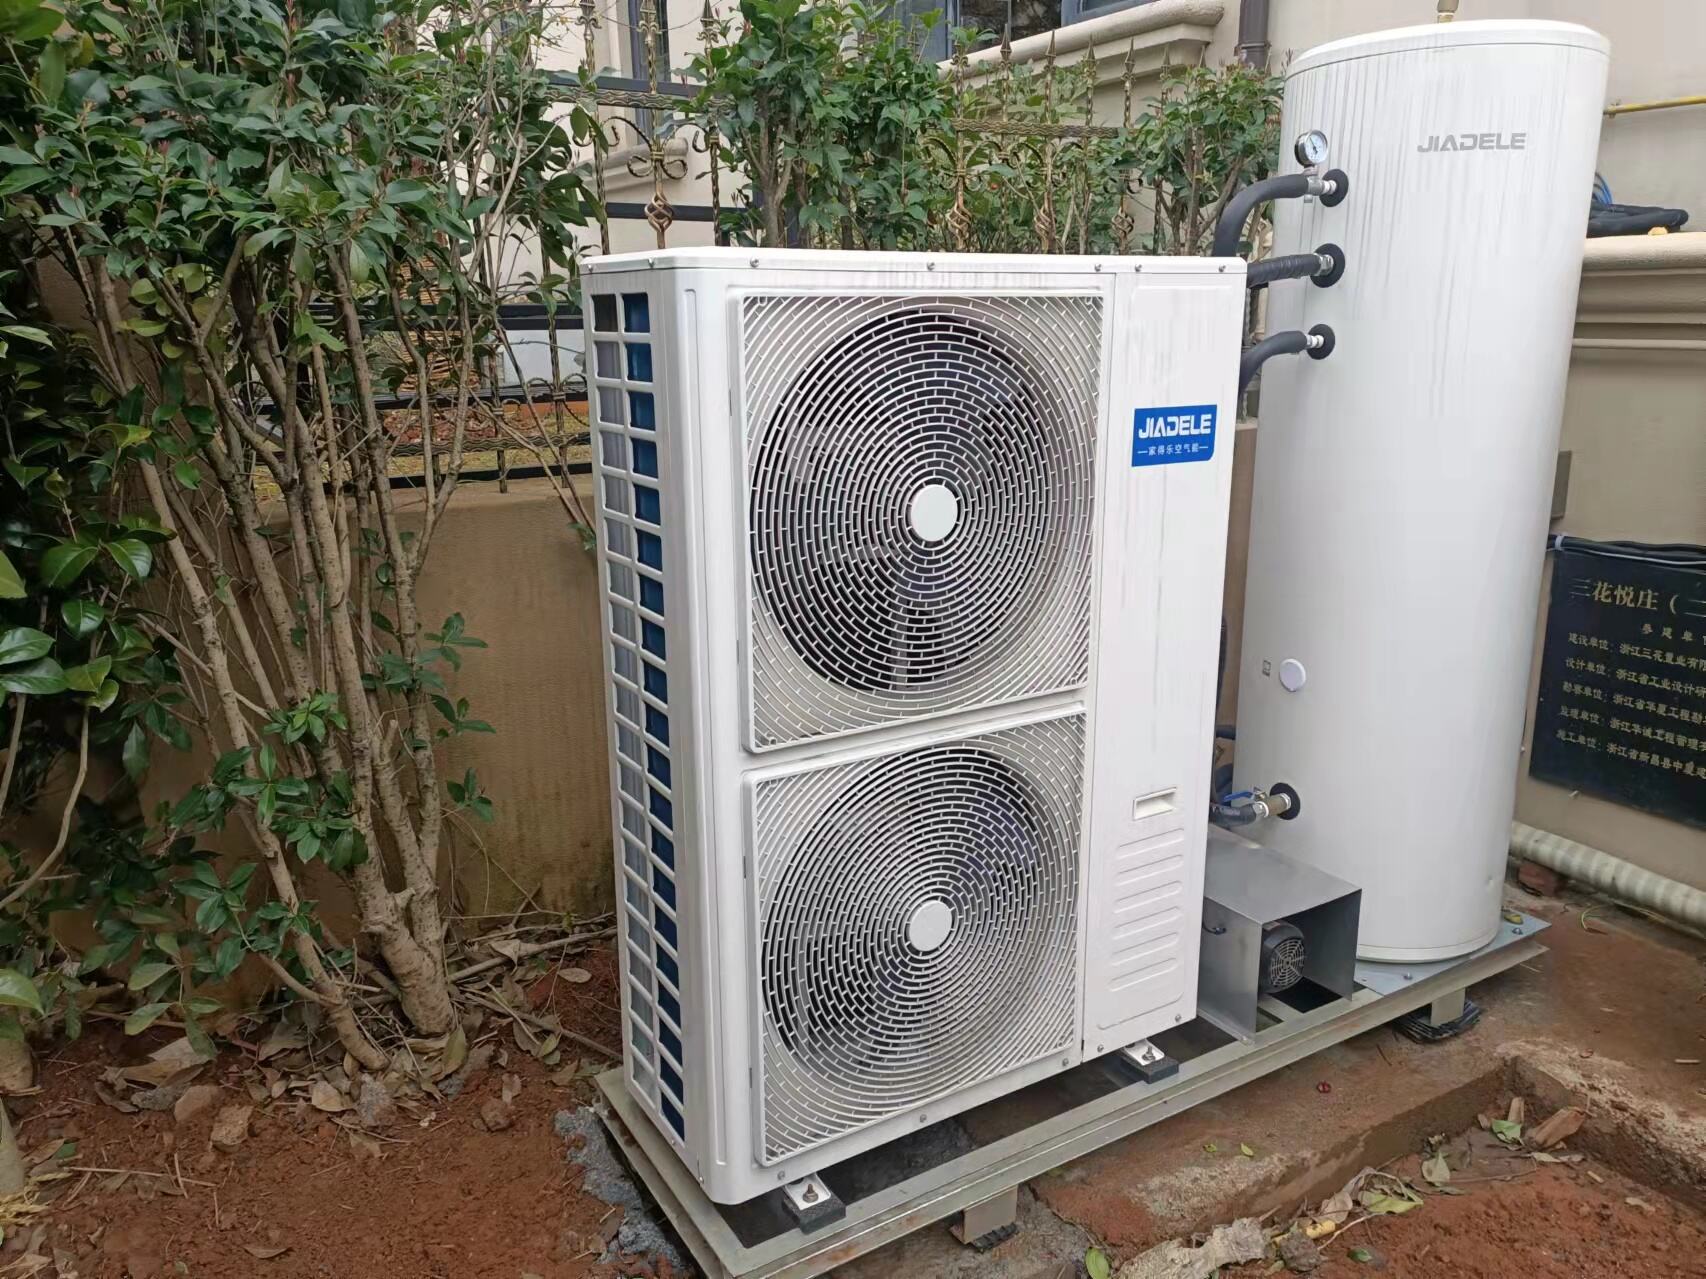 Air source heat pump home 10kw inverter supplier